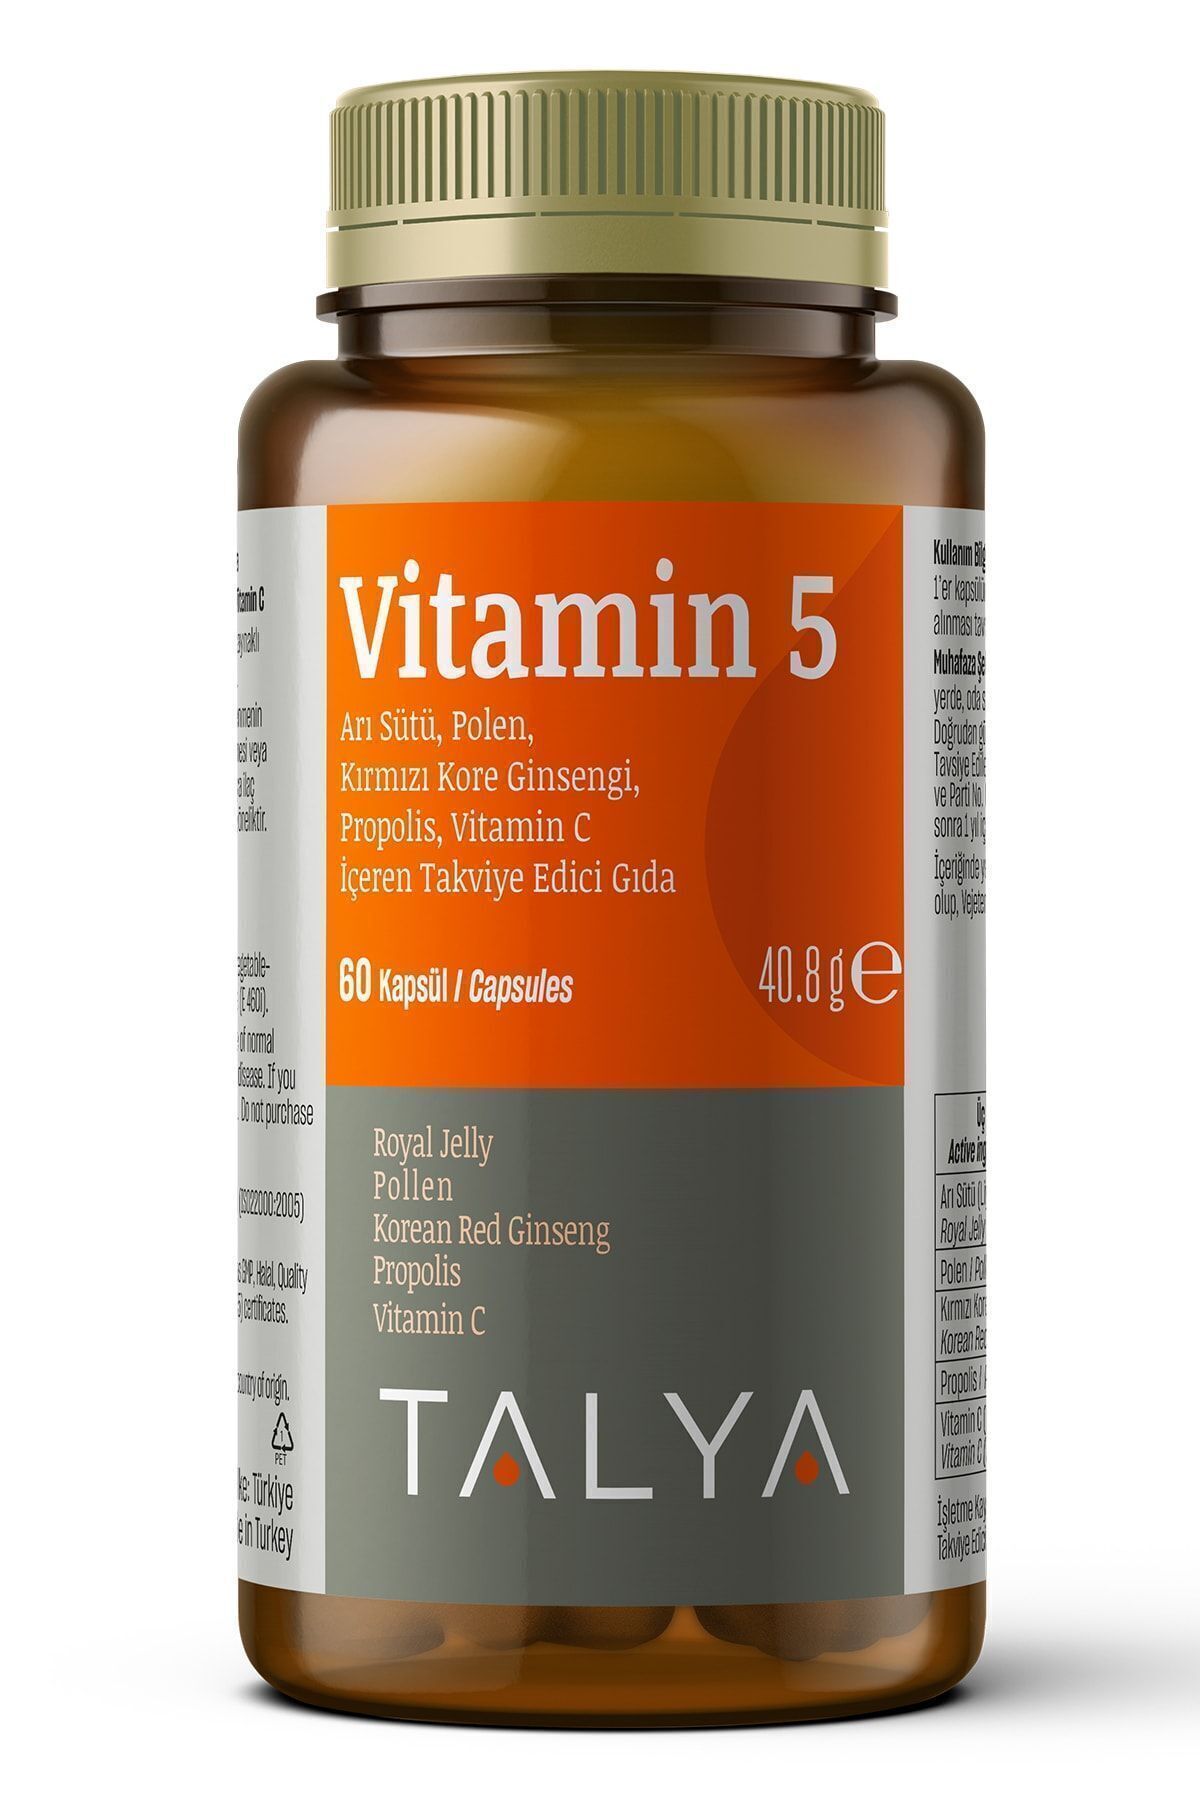 Talya Vitamin 5 Arı Sütü, Polen, Kırmızı Kore Ginsengi, Propolis, Vitamin C Içeren Takviye Edici Gıda